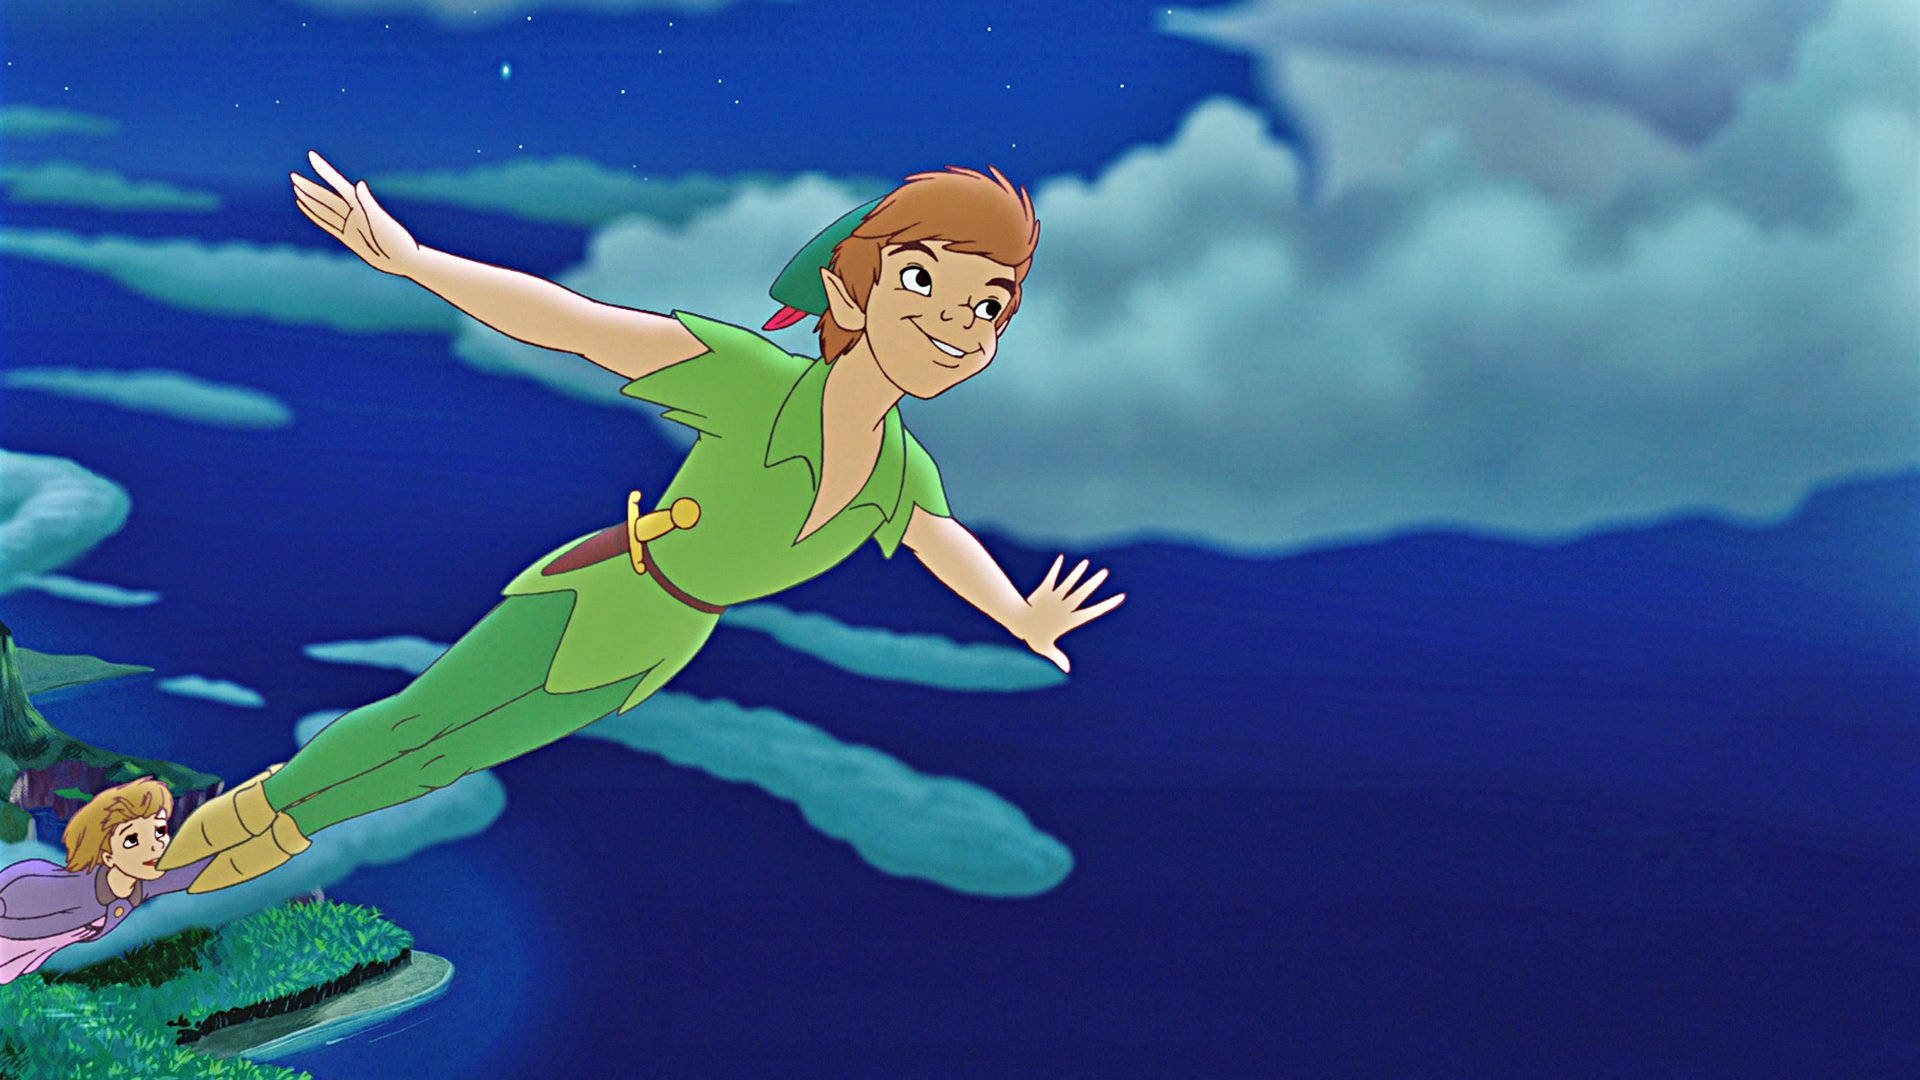 Flyvende Peter Pan-figurer pryder denne fantasifulde baggrund. Wallpaper